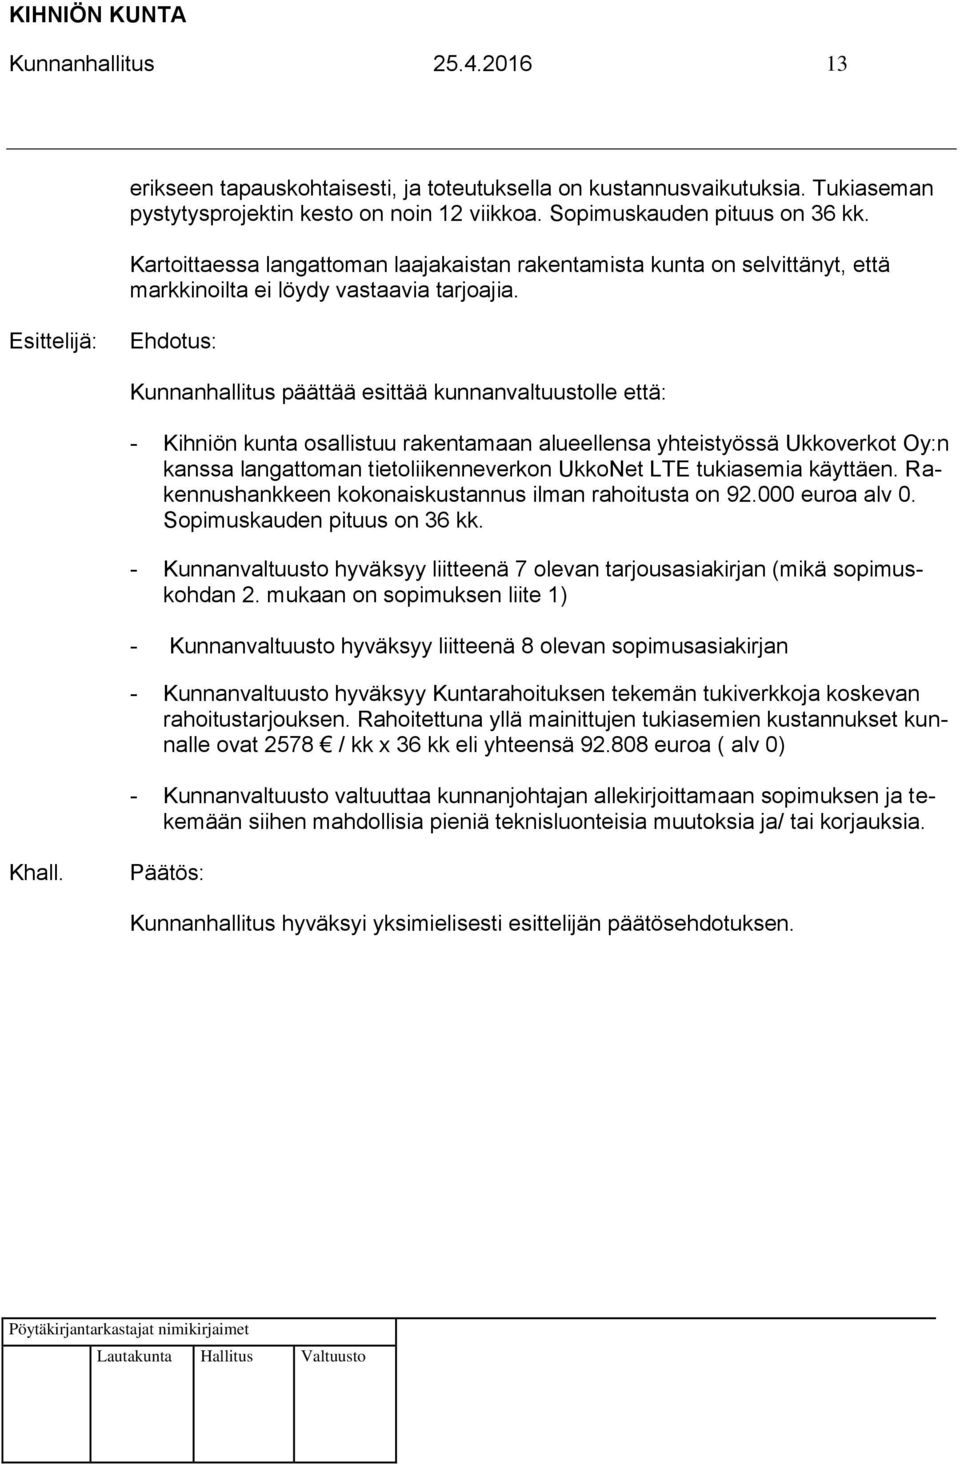 : Kunnanhallitus päättää esittää kunnanvaltuustolle että: - Kihniön kunta osallistuu rakentamaan alueellensa yhteistyössä Ukkoverkot Oy:n kanssa langattoman tietoliikenneverkon UkkoNet LTE tukiasemia